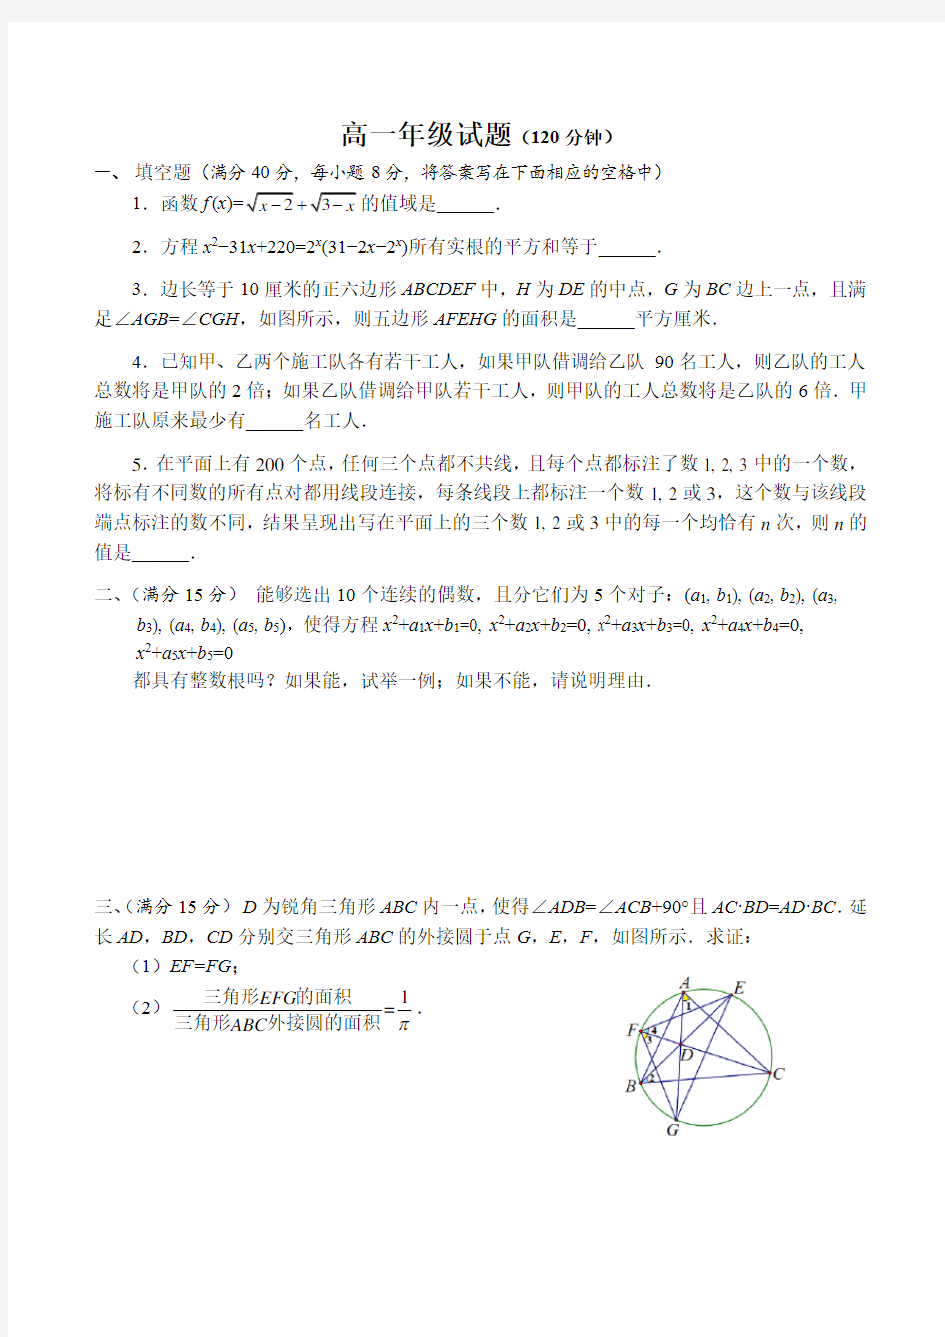 2018年北京市高中数学竞赛高一年级复赛试题